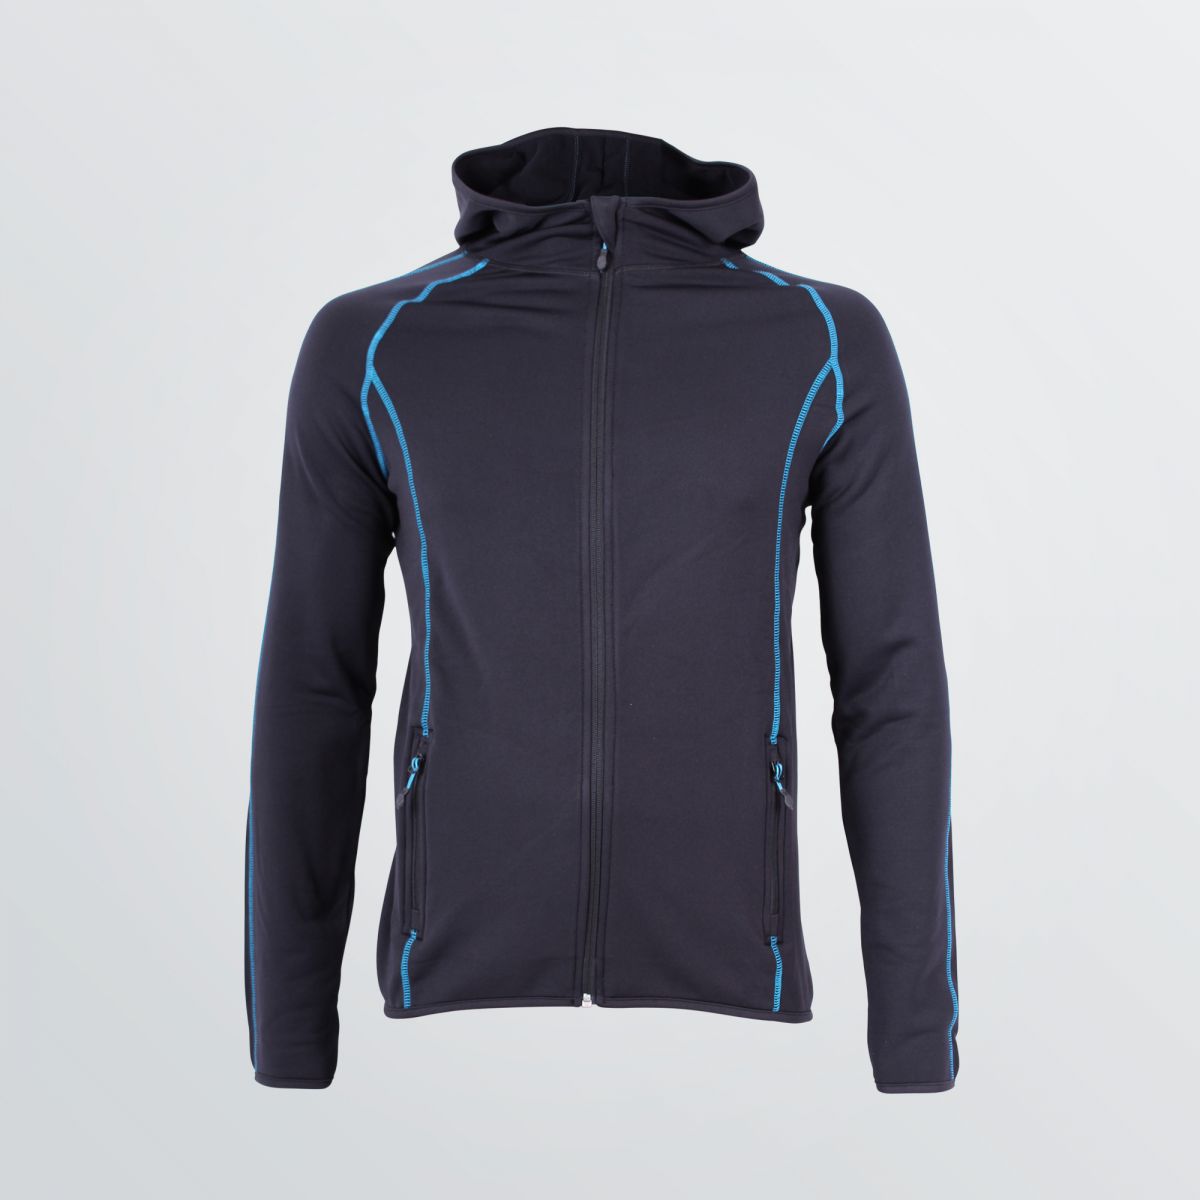 Space Jacket zum Individualisieren als Produktbeispiel im Herrenschnitt schwarzer Farbe und blauen Flatlocks  - Frontansicht